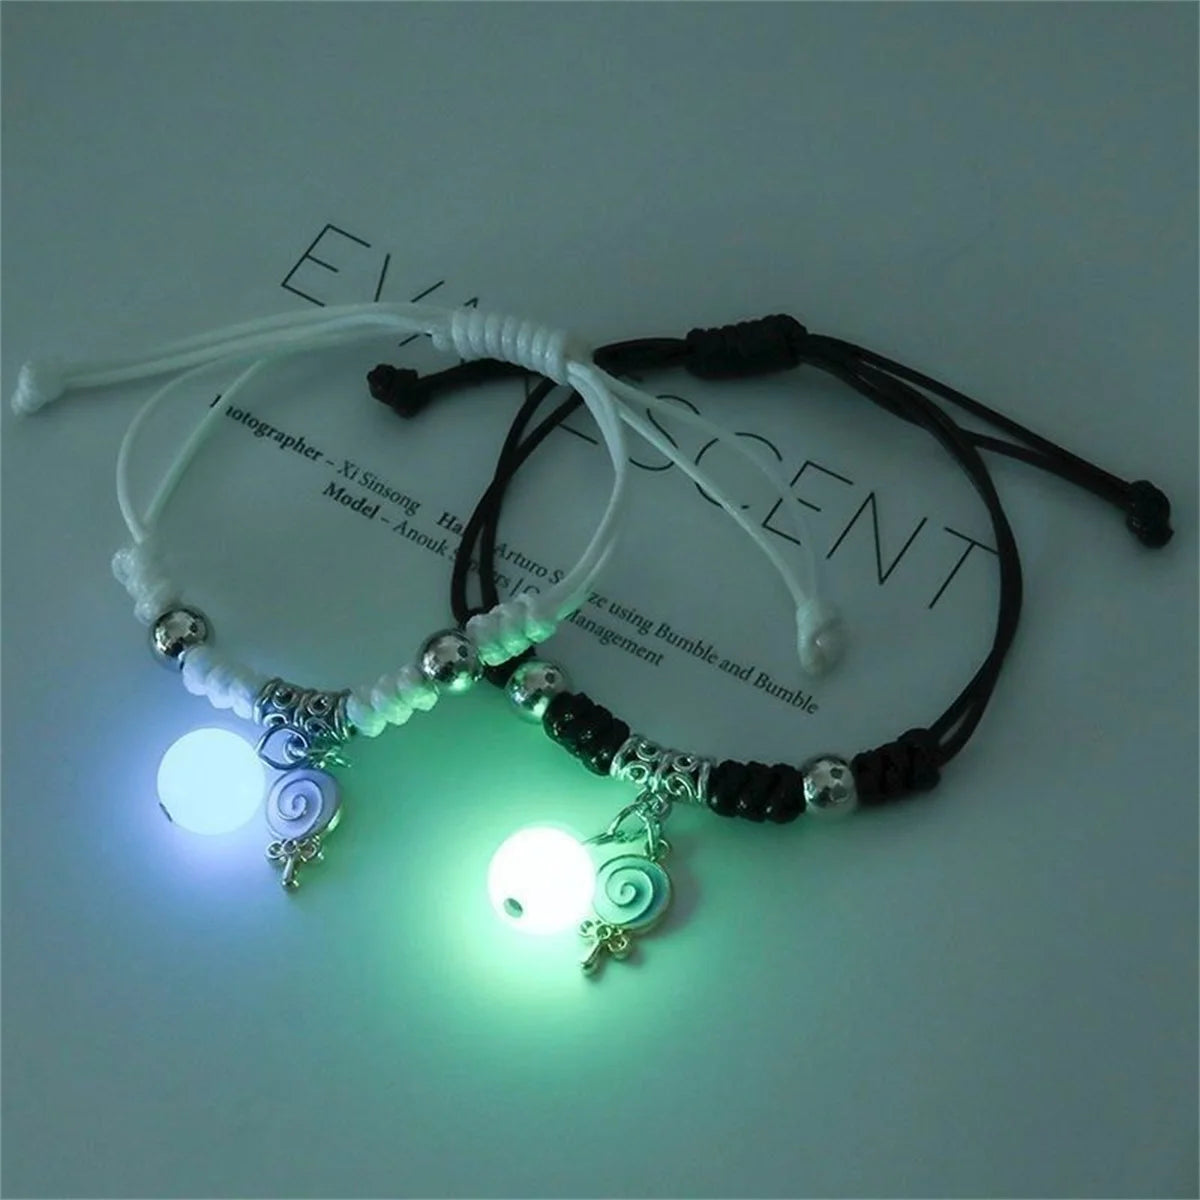 Luminous Beads Couple Bracelet: Stylish Matching Jewelry